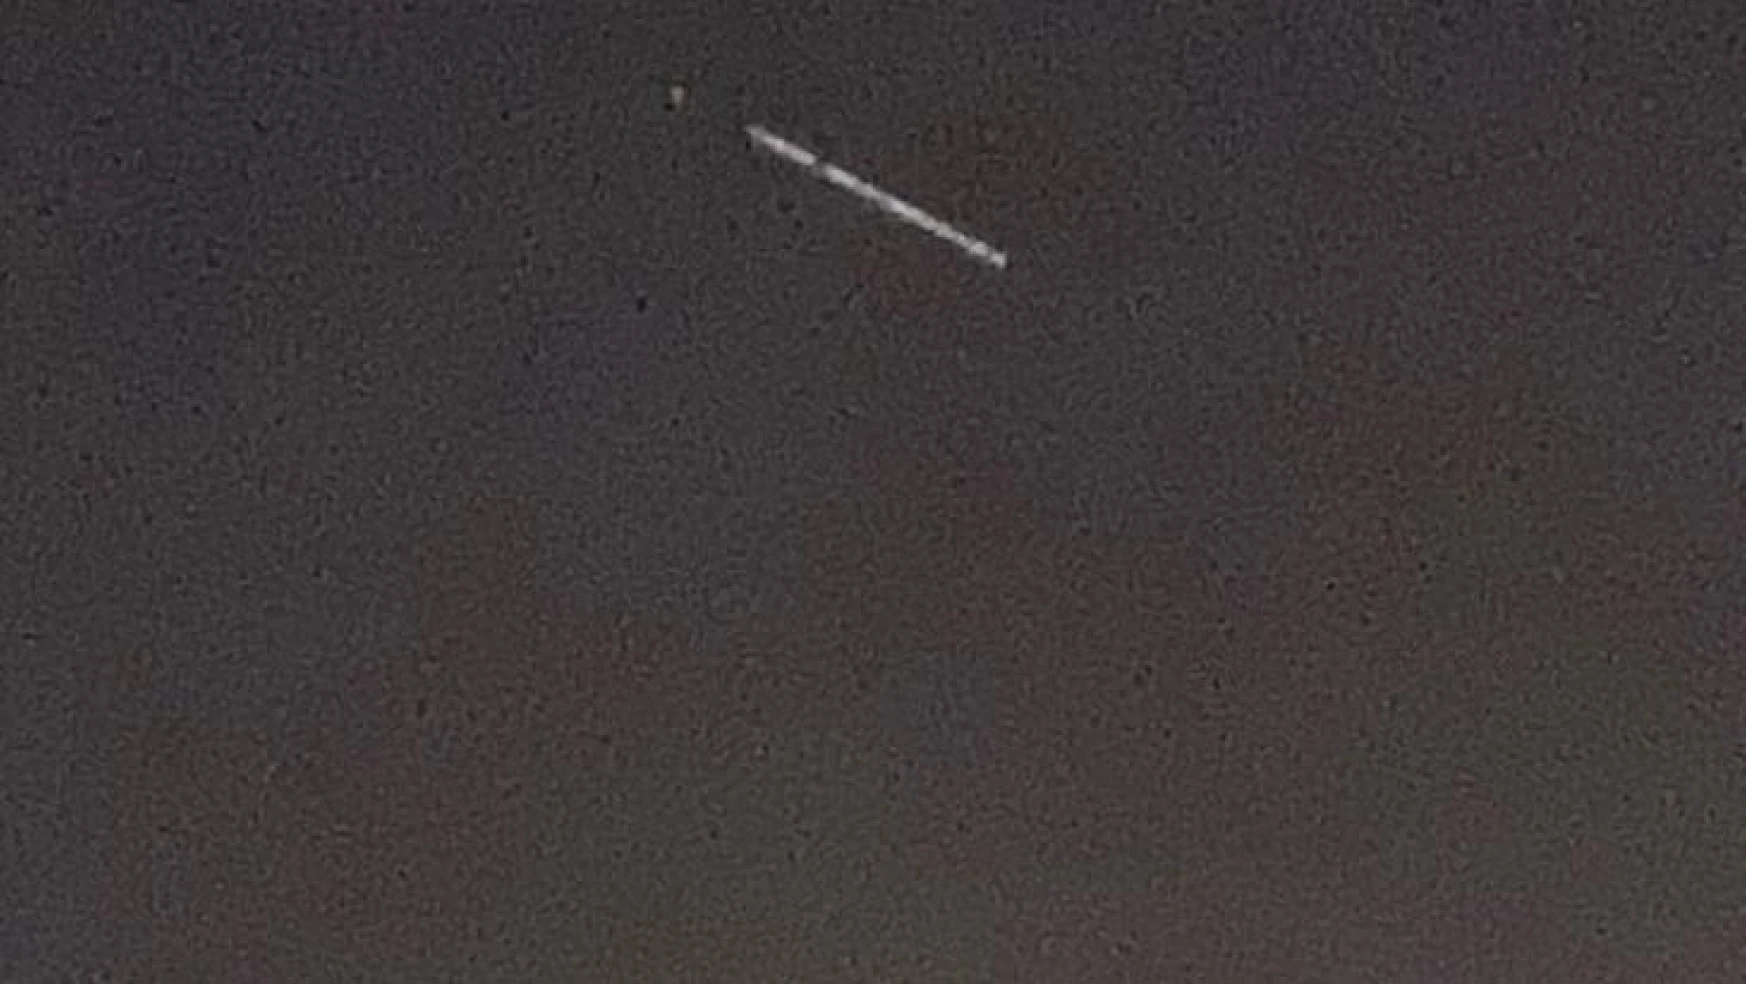 Starlink uyduları Gaziantep semalarında görüntülendi